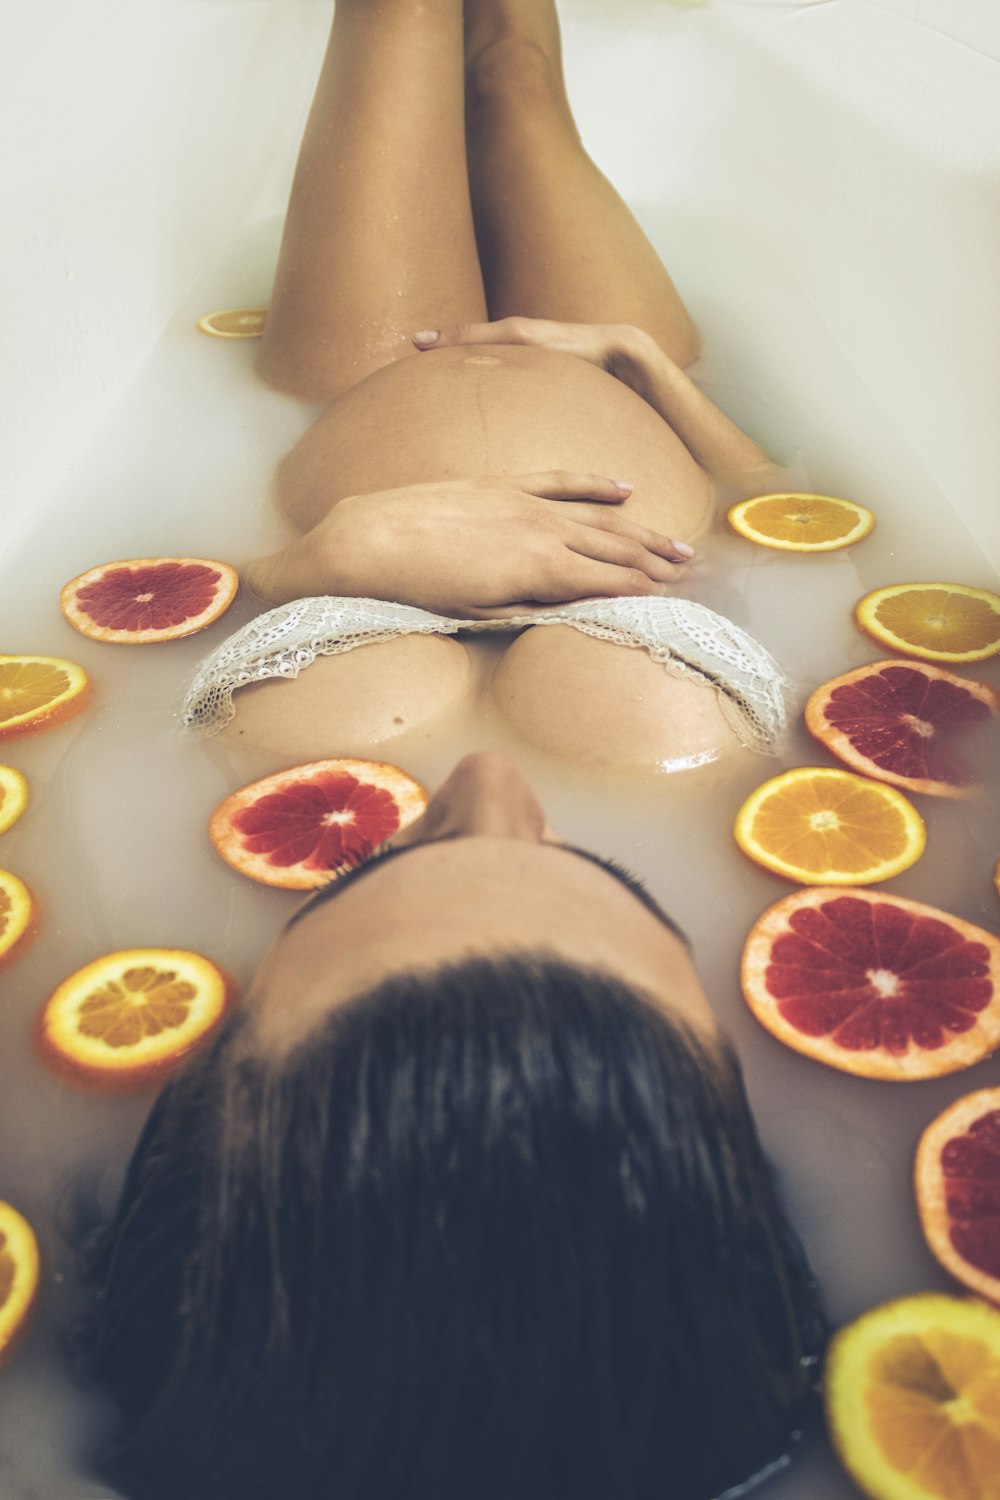 femme dans une baignoire en céramique blanche avec des tranches de fruits orange